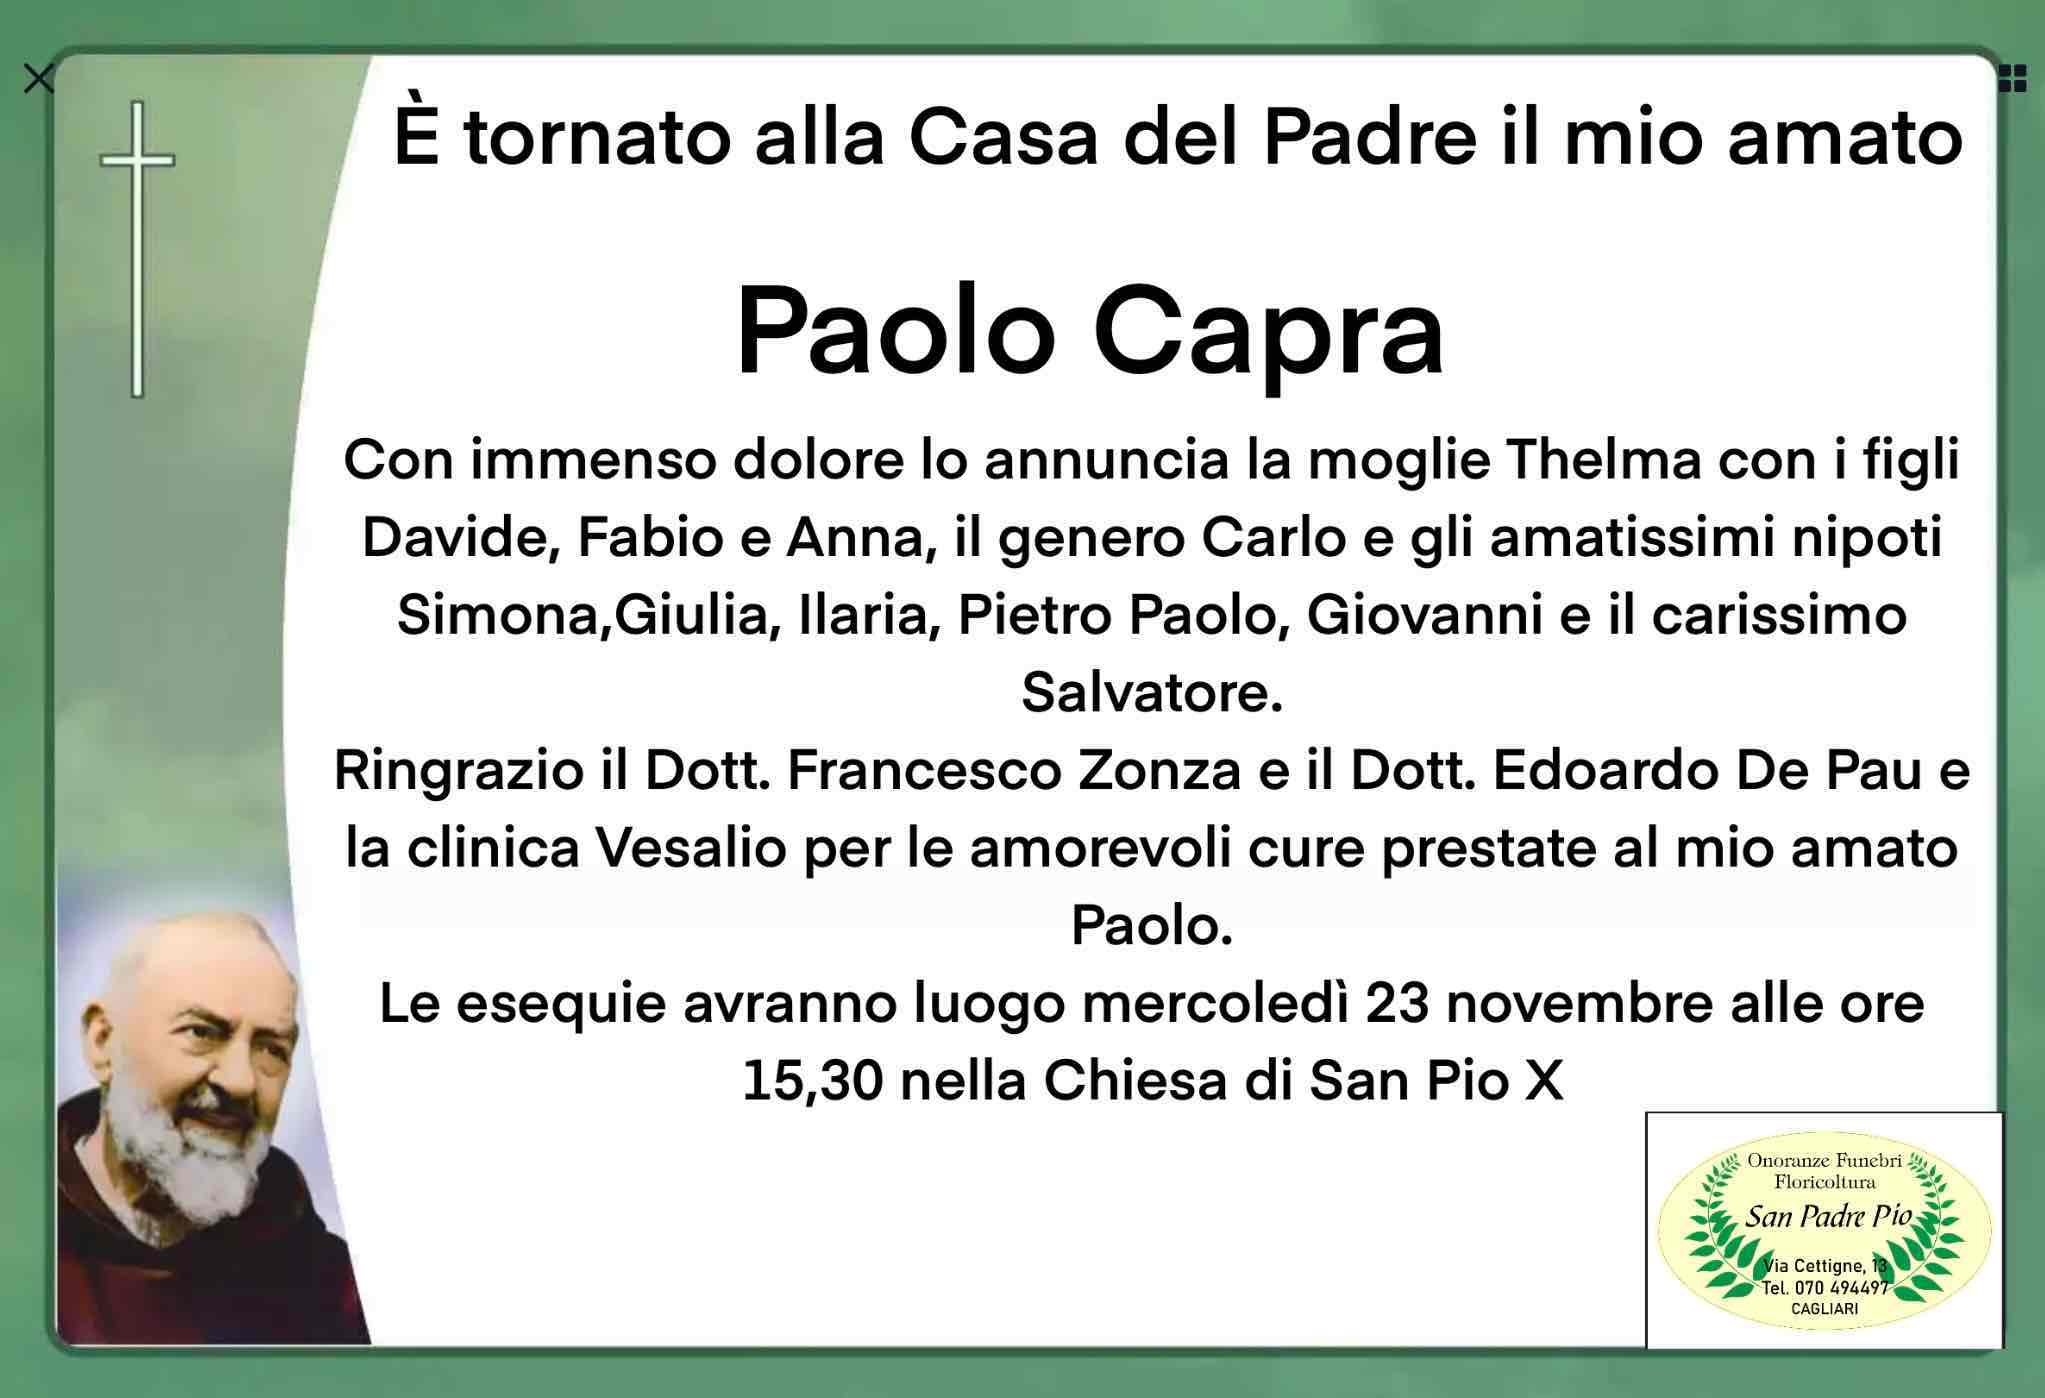 Paolo Capra